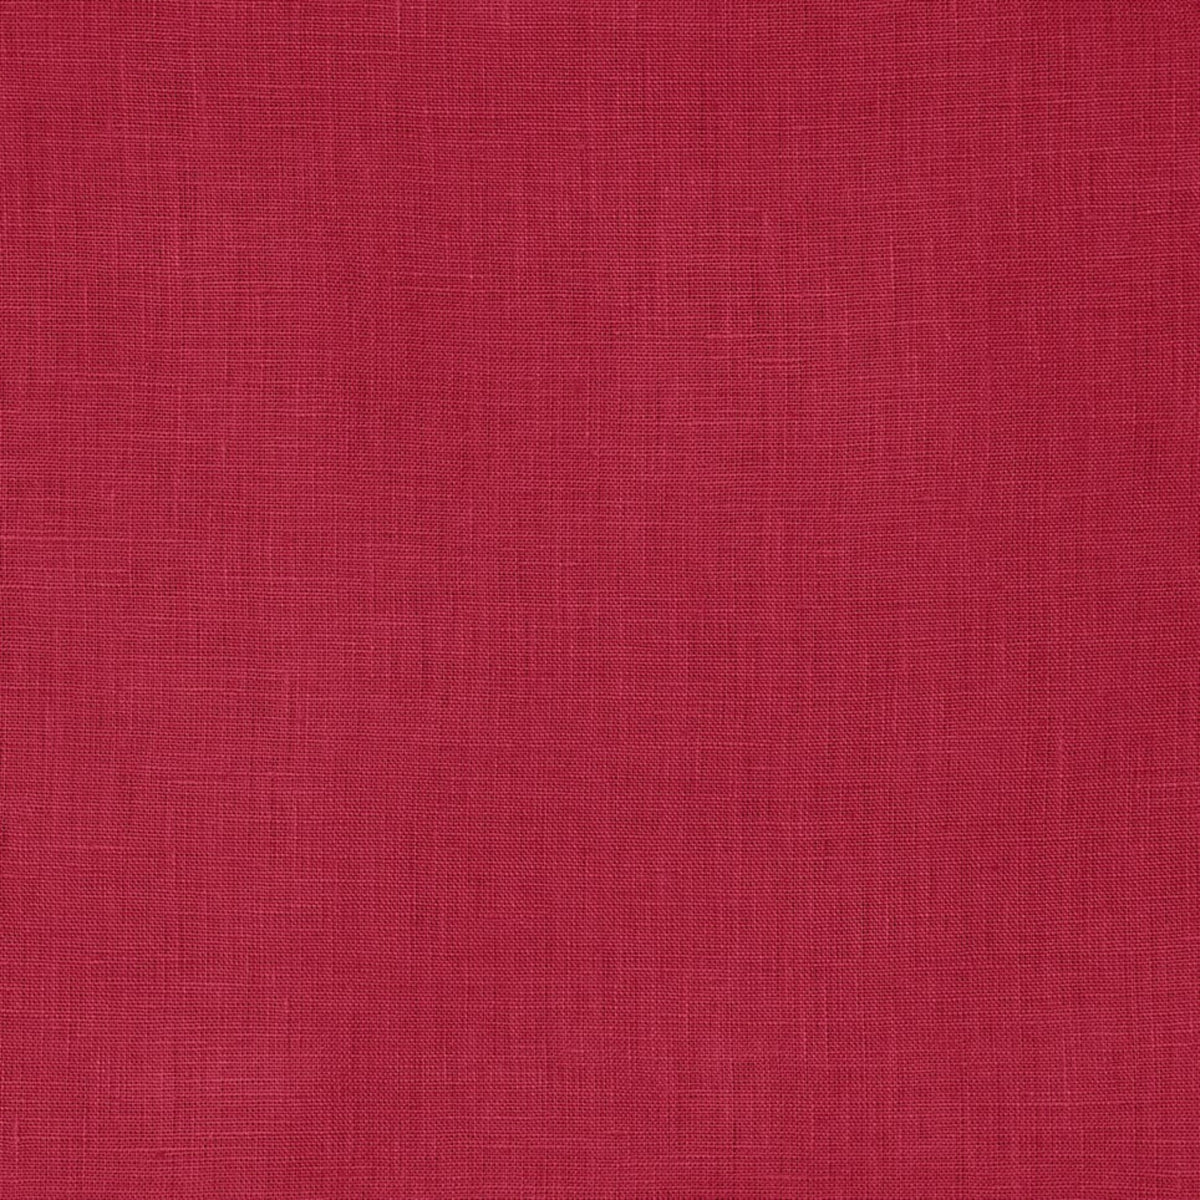 Sferra Festival Table Linens Crimson Swatch Fine Linens